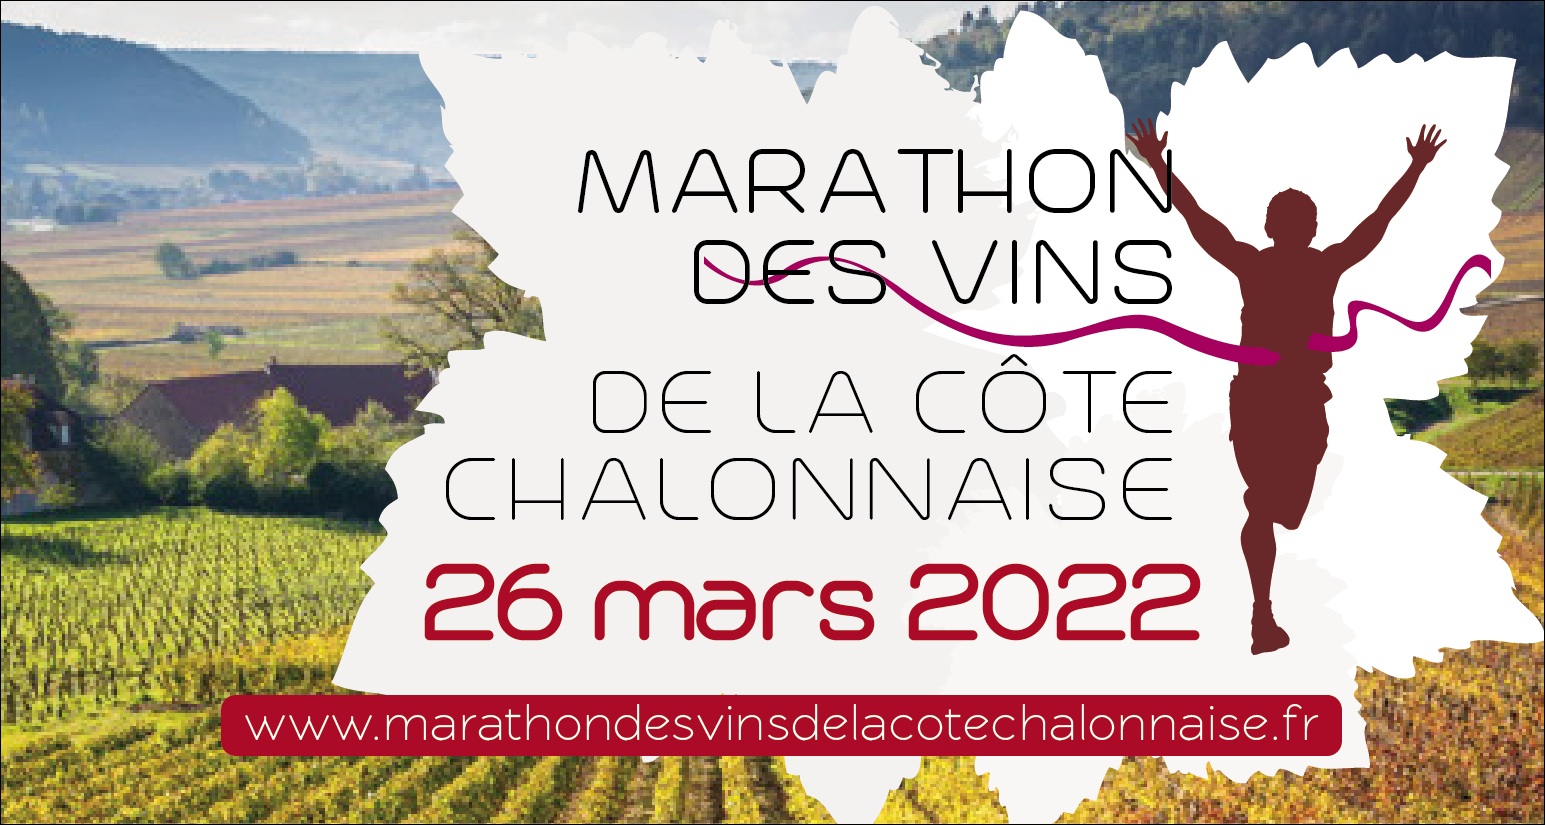 Marathon des vins de la Côte Chalonnaise